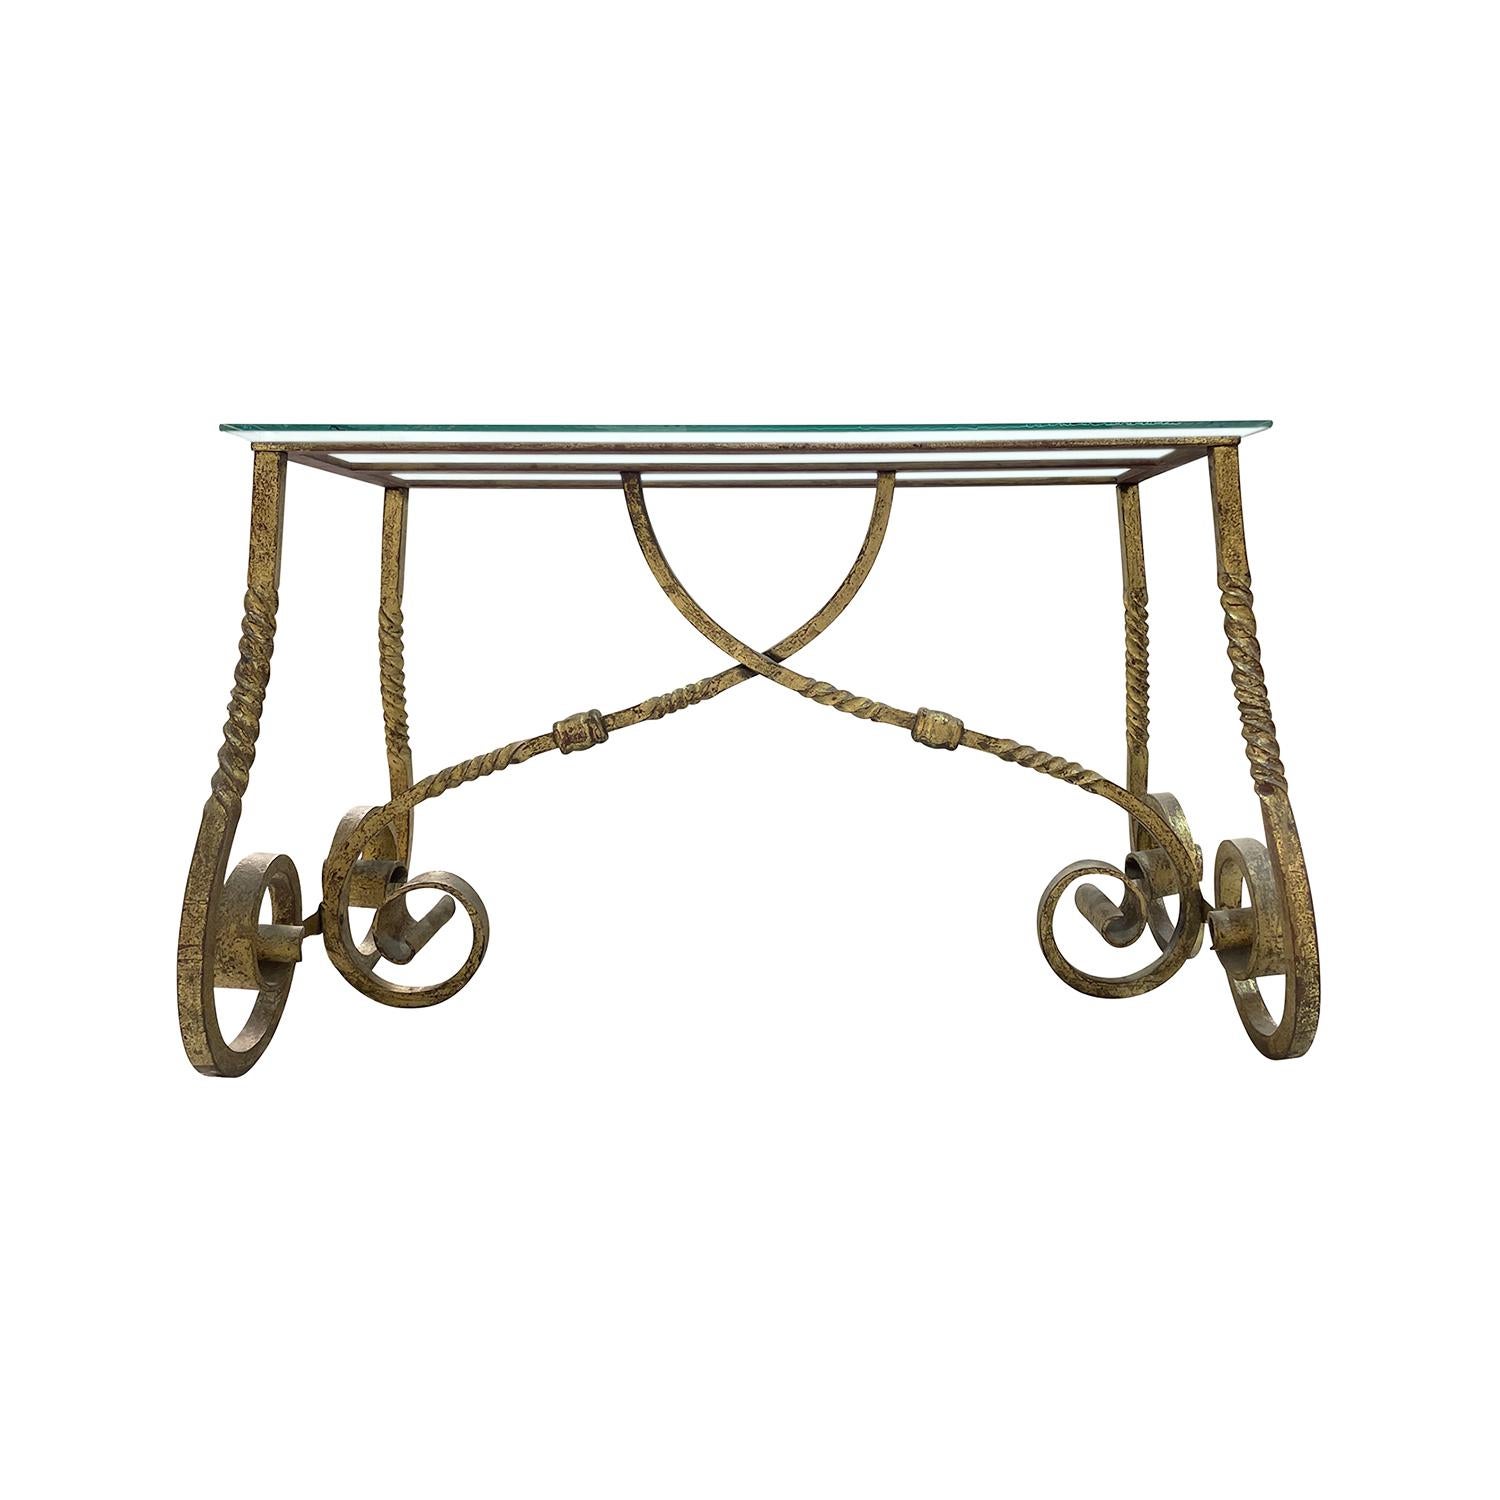 Ein goldener, französischer Art Deco Tisch aus handgefertigtem, vergoldetem Metall, in gutem Zustand. Der detailreiche rechteckige Beistelltisch besteht aus einer klaren Glasplatte, die auf vier gebogenen Beinen steht, die von zwei Armen gestützt